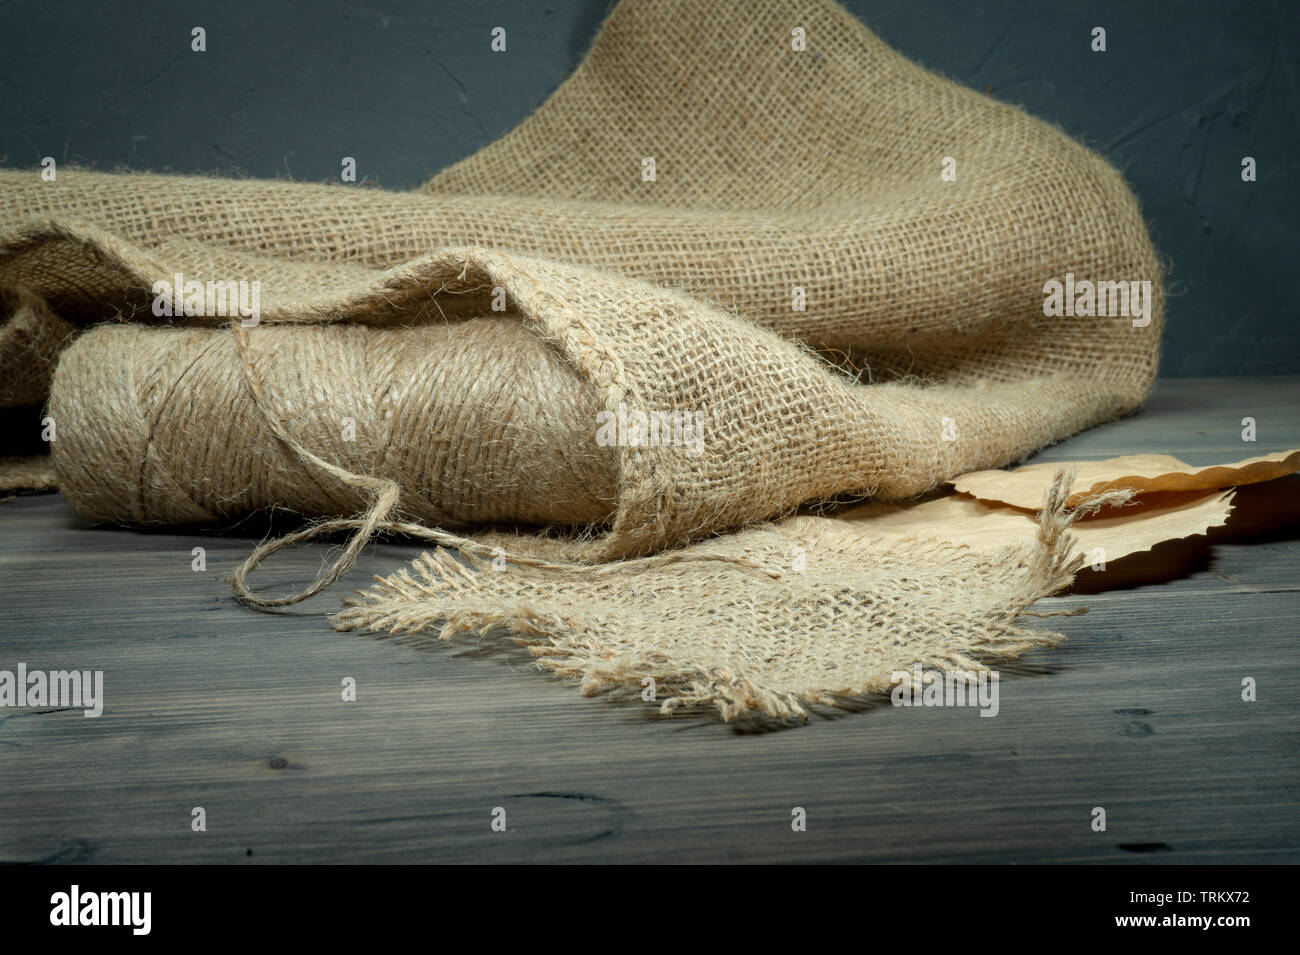 Bobines de fils de toile de jute, ficelle ou un sac en tissu sur fond gris rustique Banque D'Images